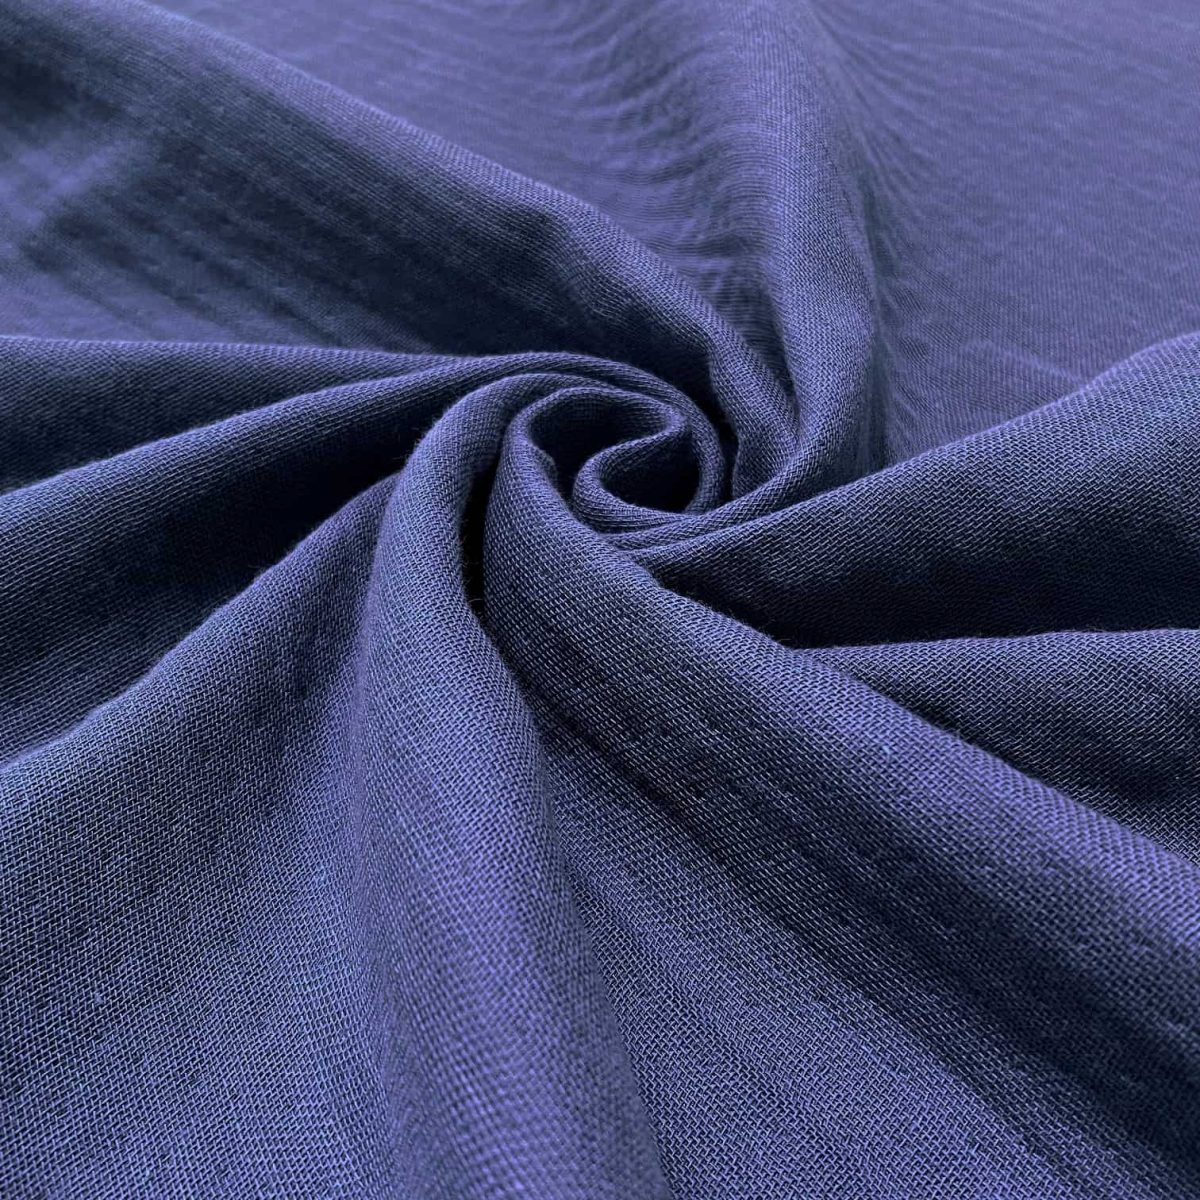 birlik1952 crinkle 4 kat multi müslin four layer gauze krinkle swaddle fabric kumaş whosale toptan lacivert mavi blue